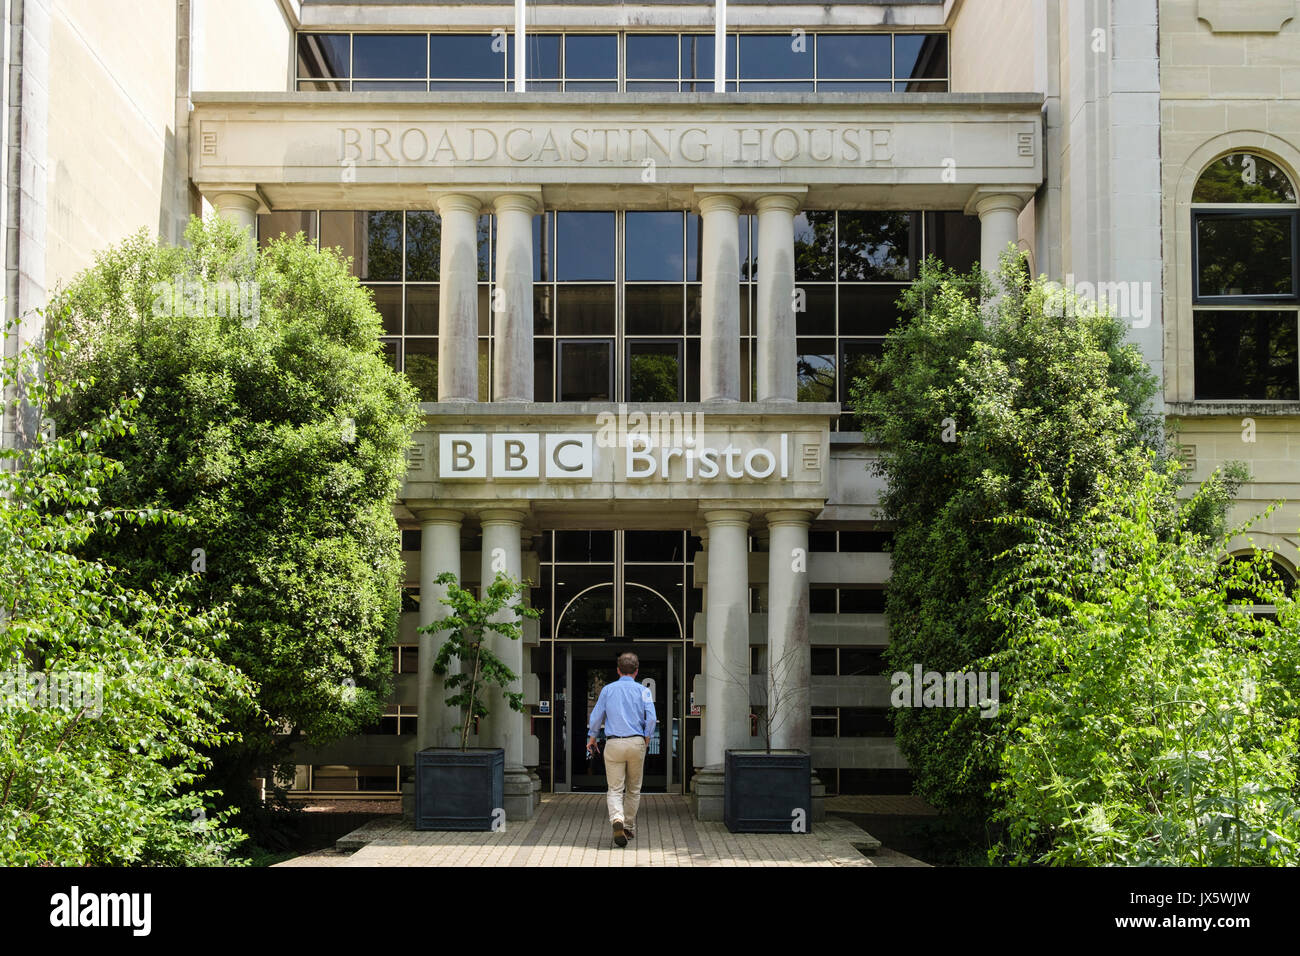 BBC Broadcasting House Eingangstür. Whiteladies Road, Bristol, Avon, England, Großbritannien, Großbritannien. Häuser der Natural History Unit. Stockfoto